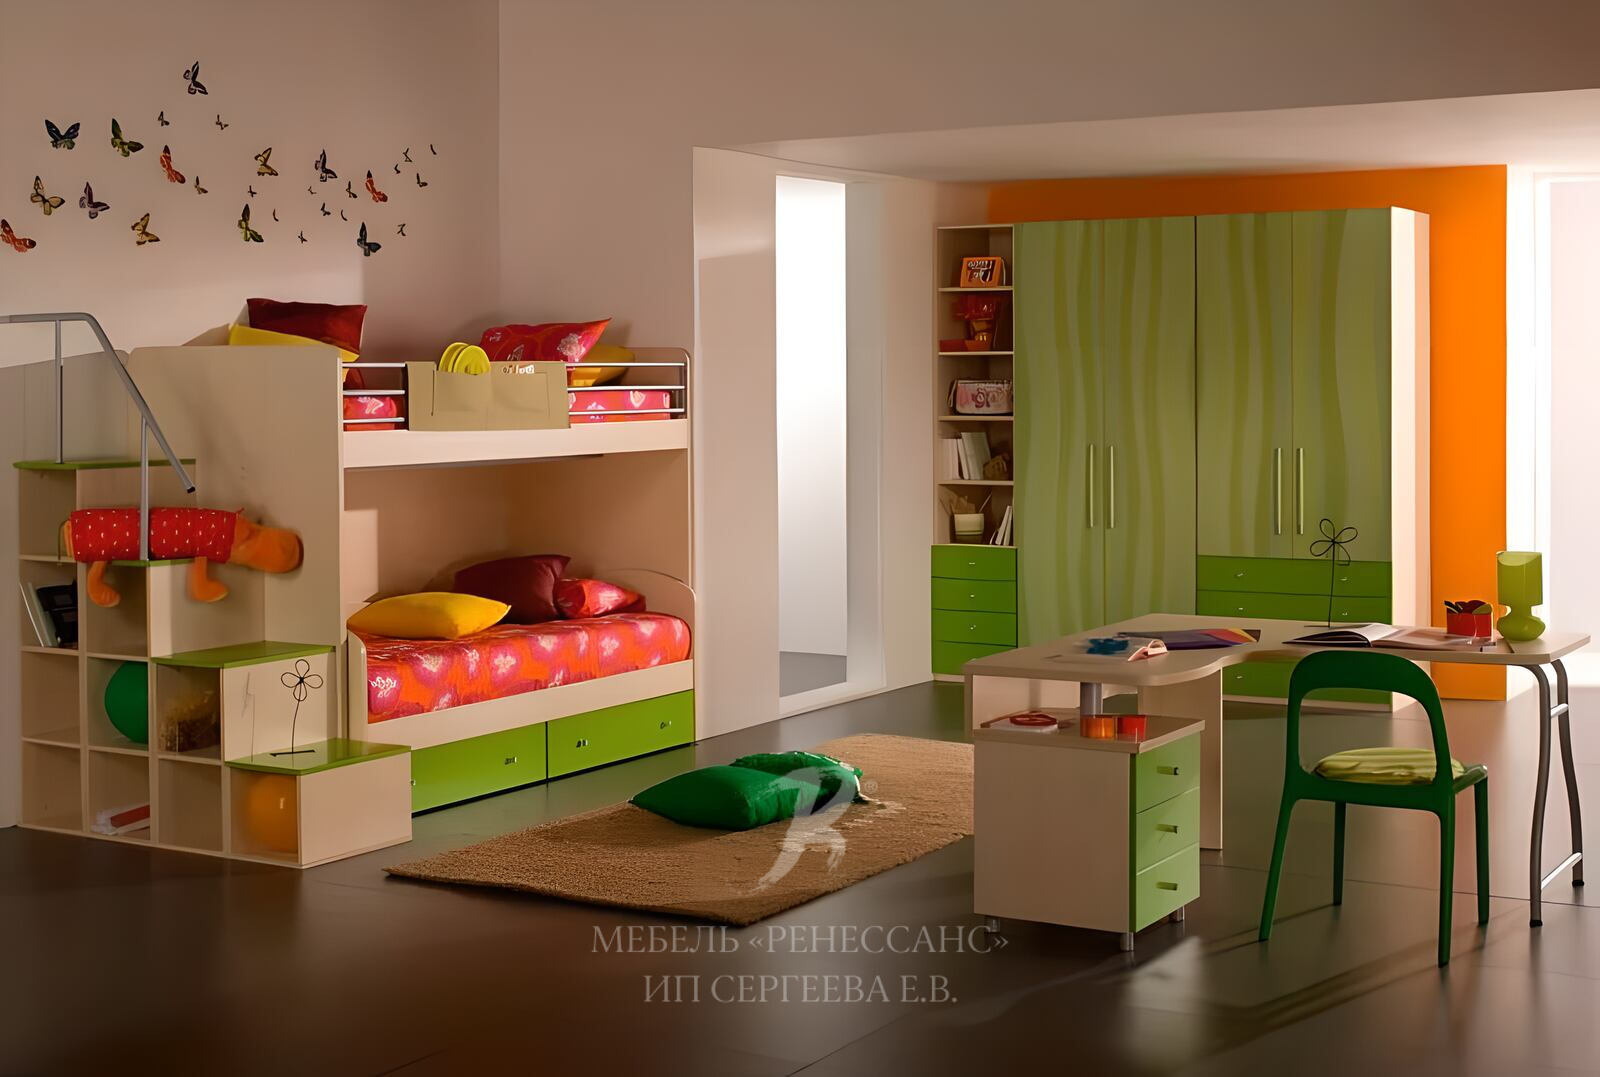 Детская аксиома. Детские комнаты. Дизайнерская детская мебель. Дизайнерская мебель для детской комнаты. Корпусная мебель в детскую комнату.